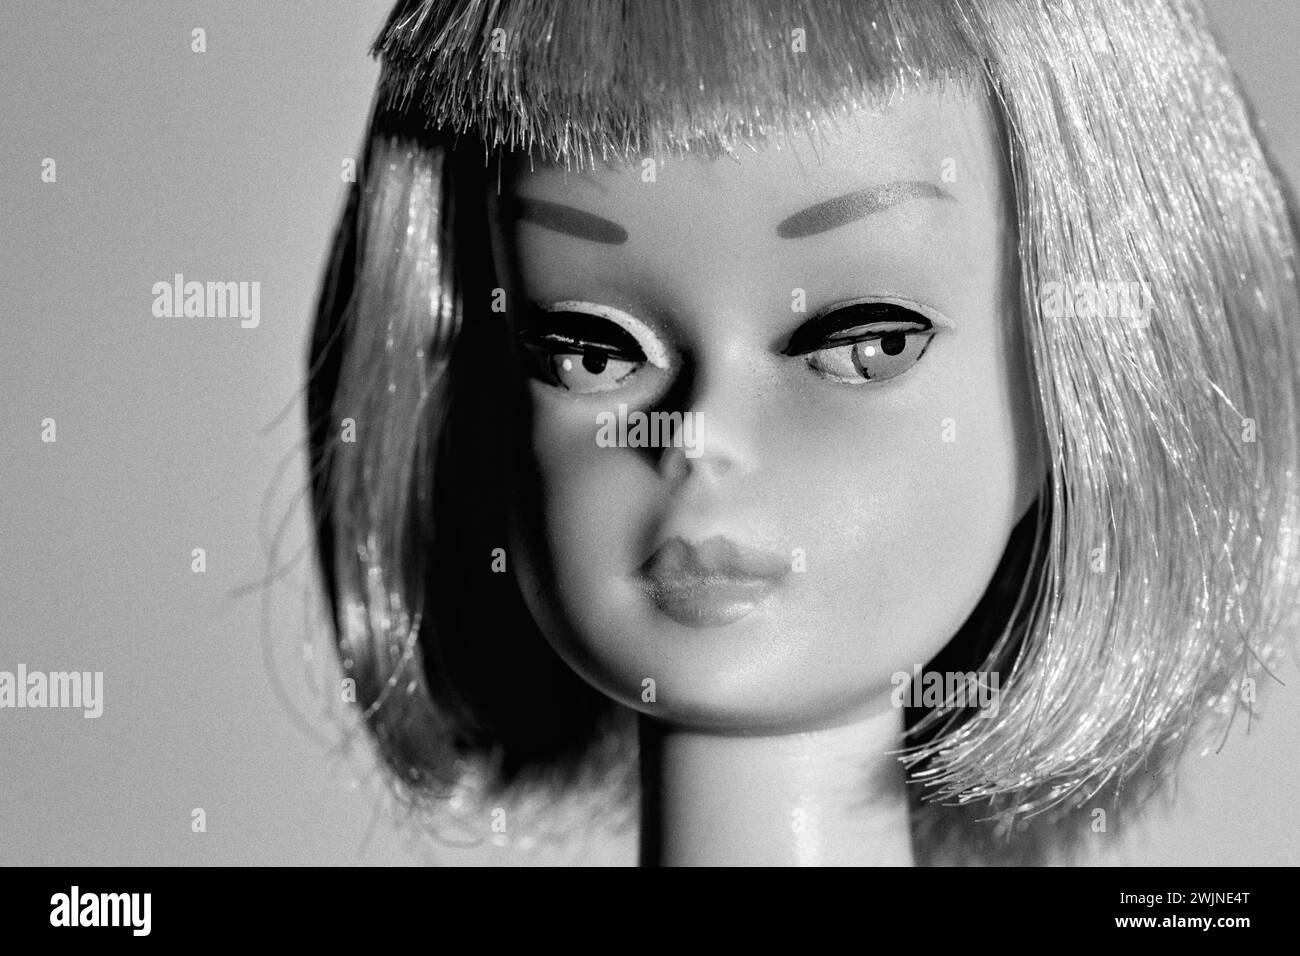 Ein Nahporträt einer Barbie-Puppe aus den 1960er Jahren, "Copyright 1958, Made in Japan", mit blonden Haaren, die in einem stumpfen bob mit Pony geschnitten sind Stockfoto